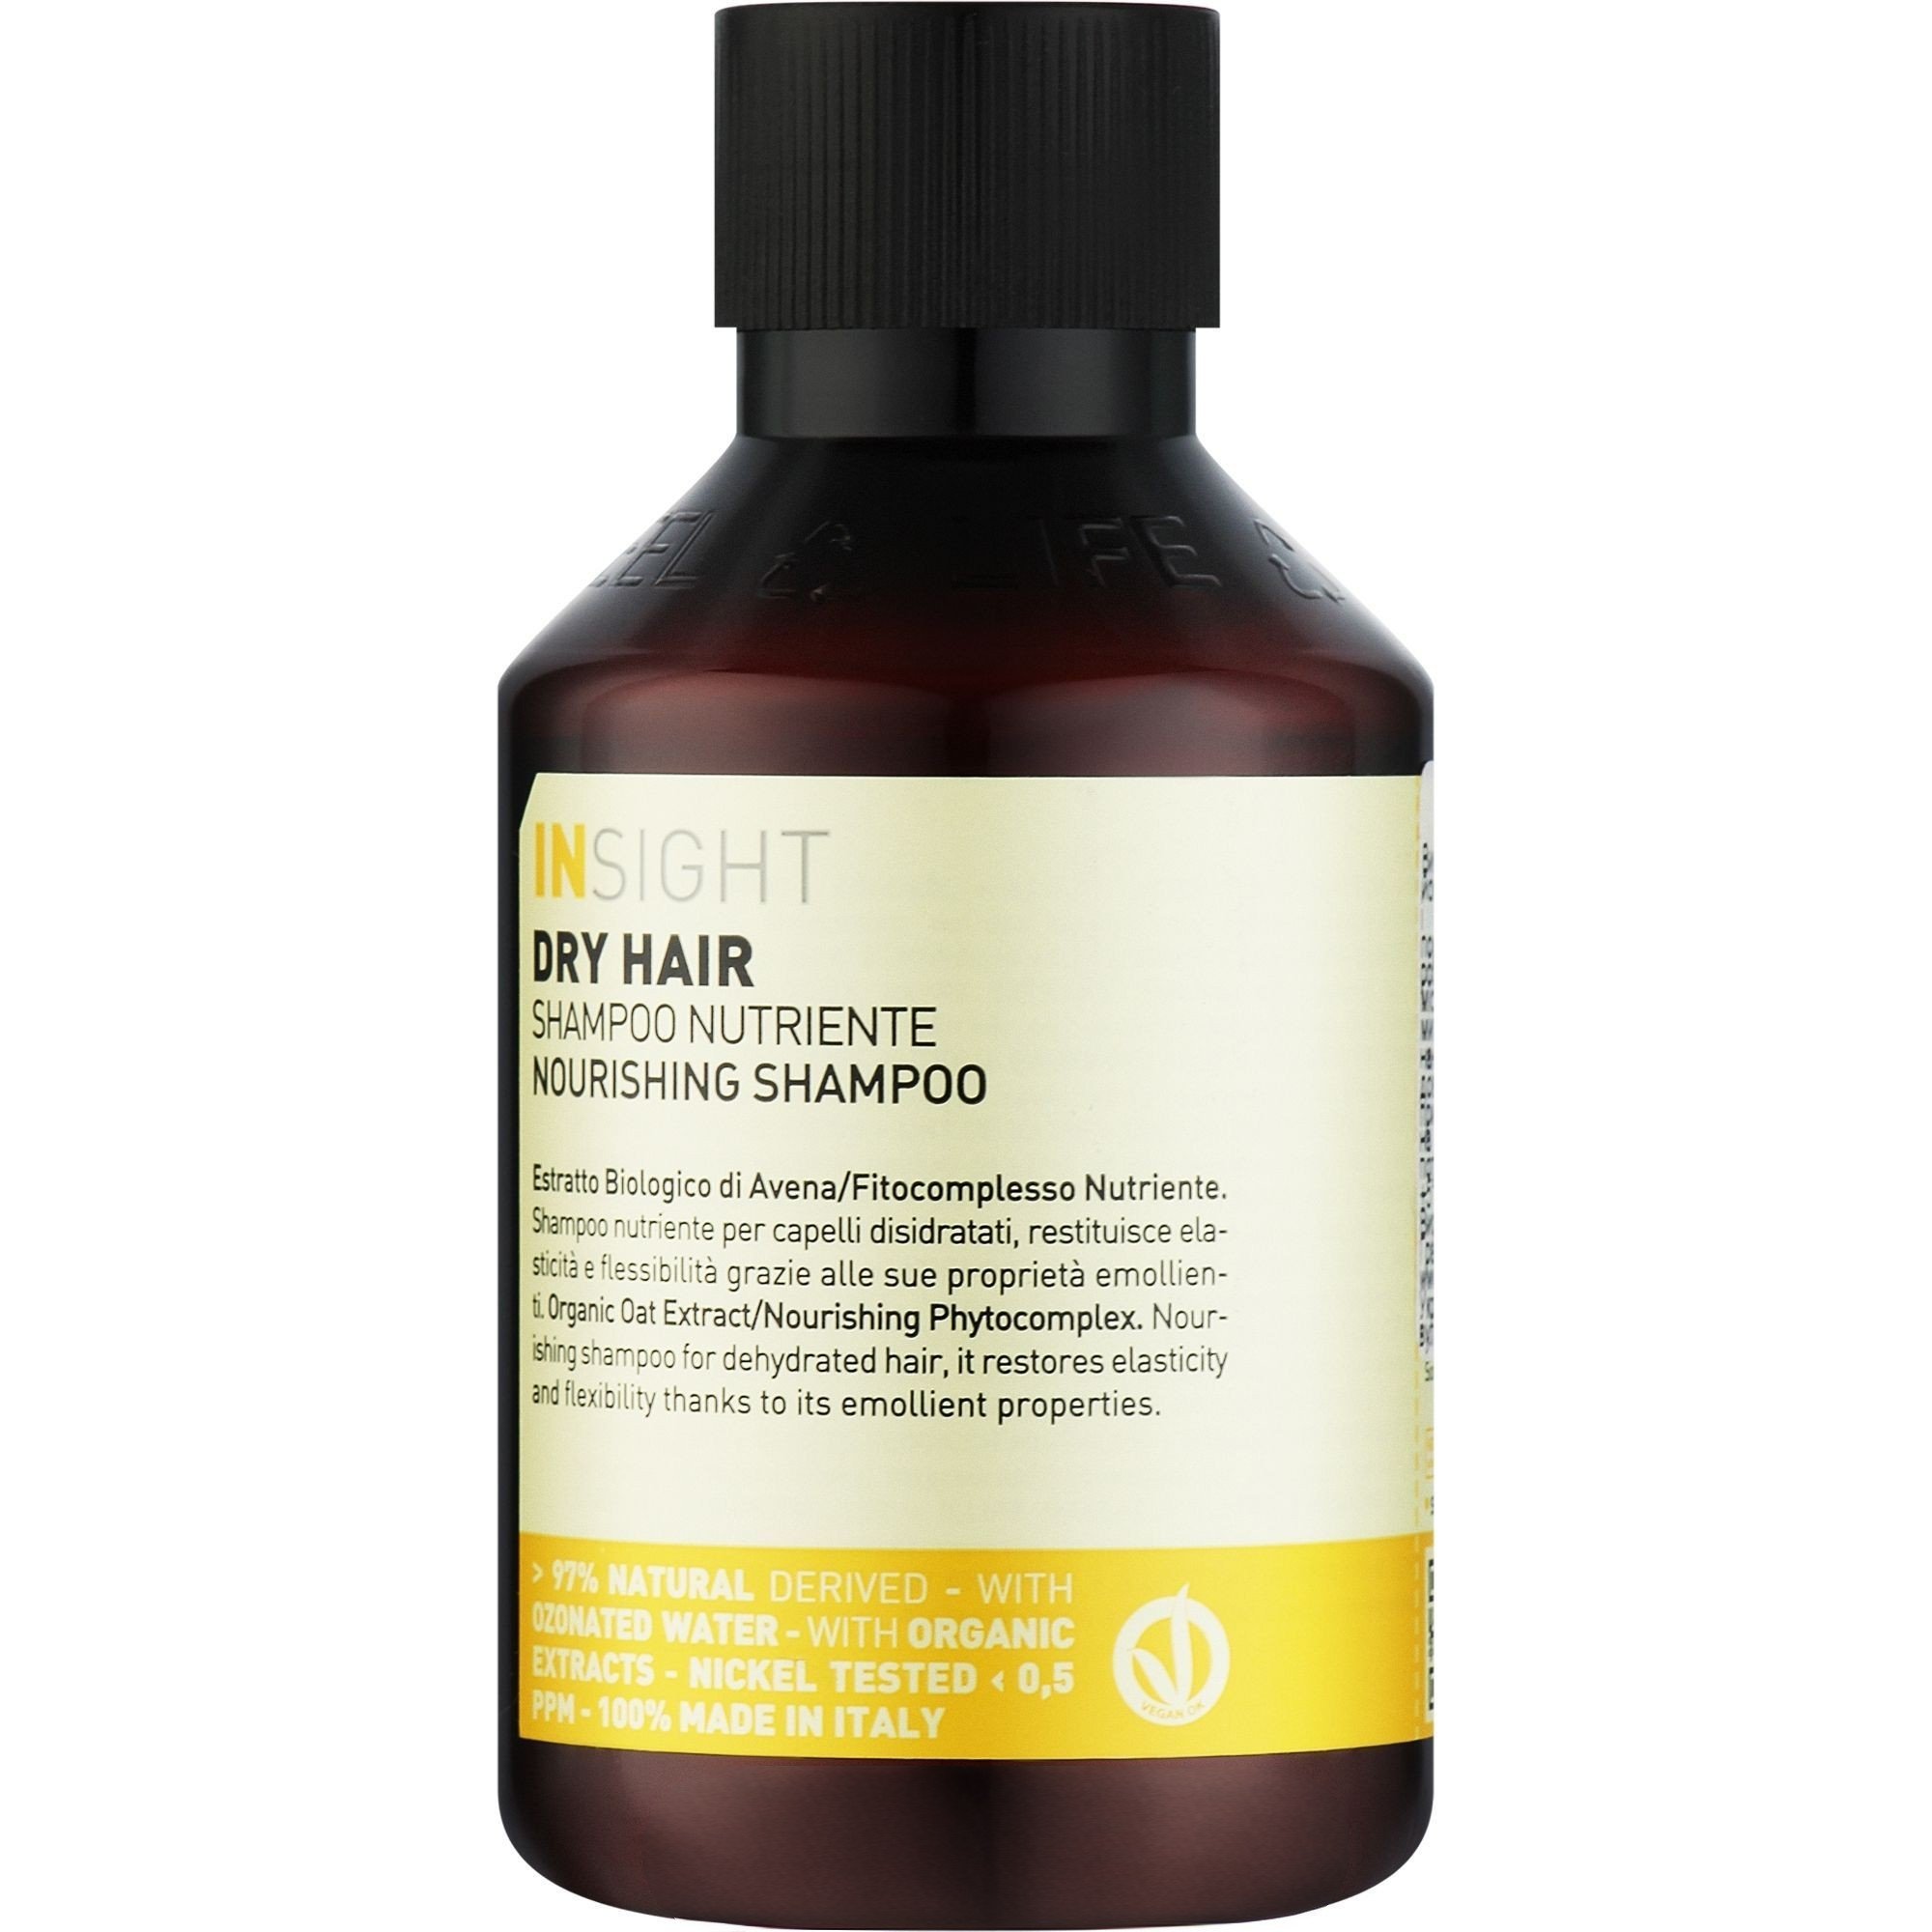 Шампунь Insight Dry Hair Nourishing Shampoo питательный для сухих волос 100 мл - фото 1